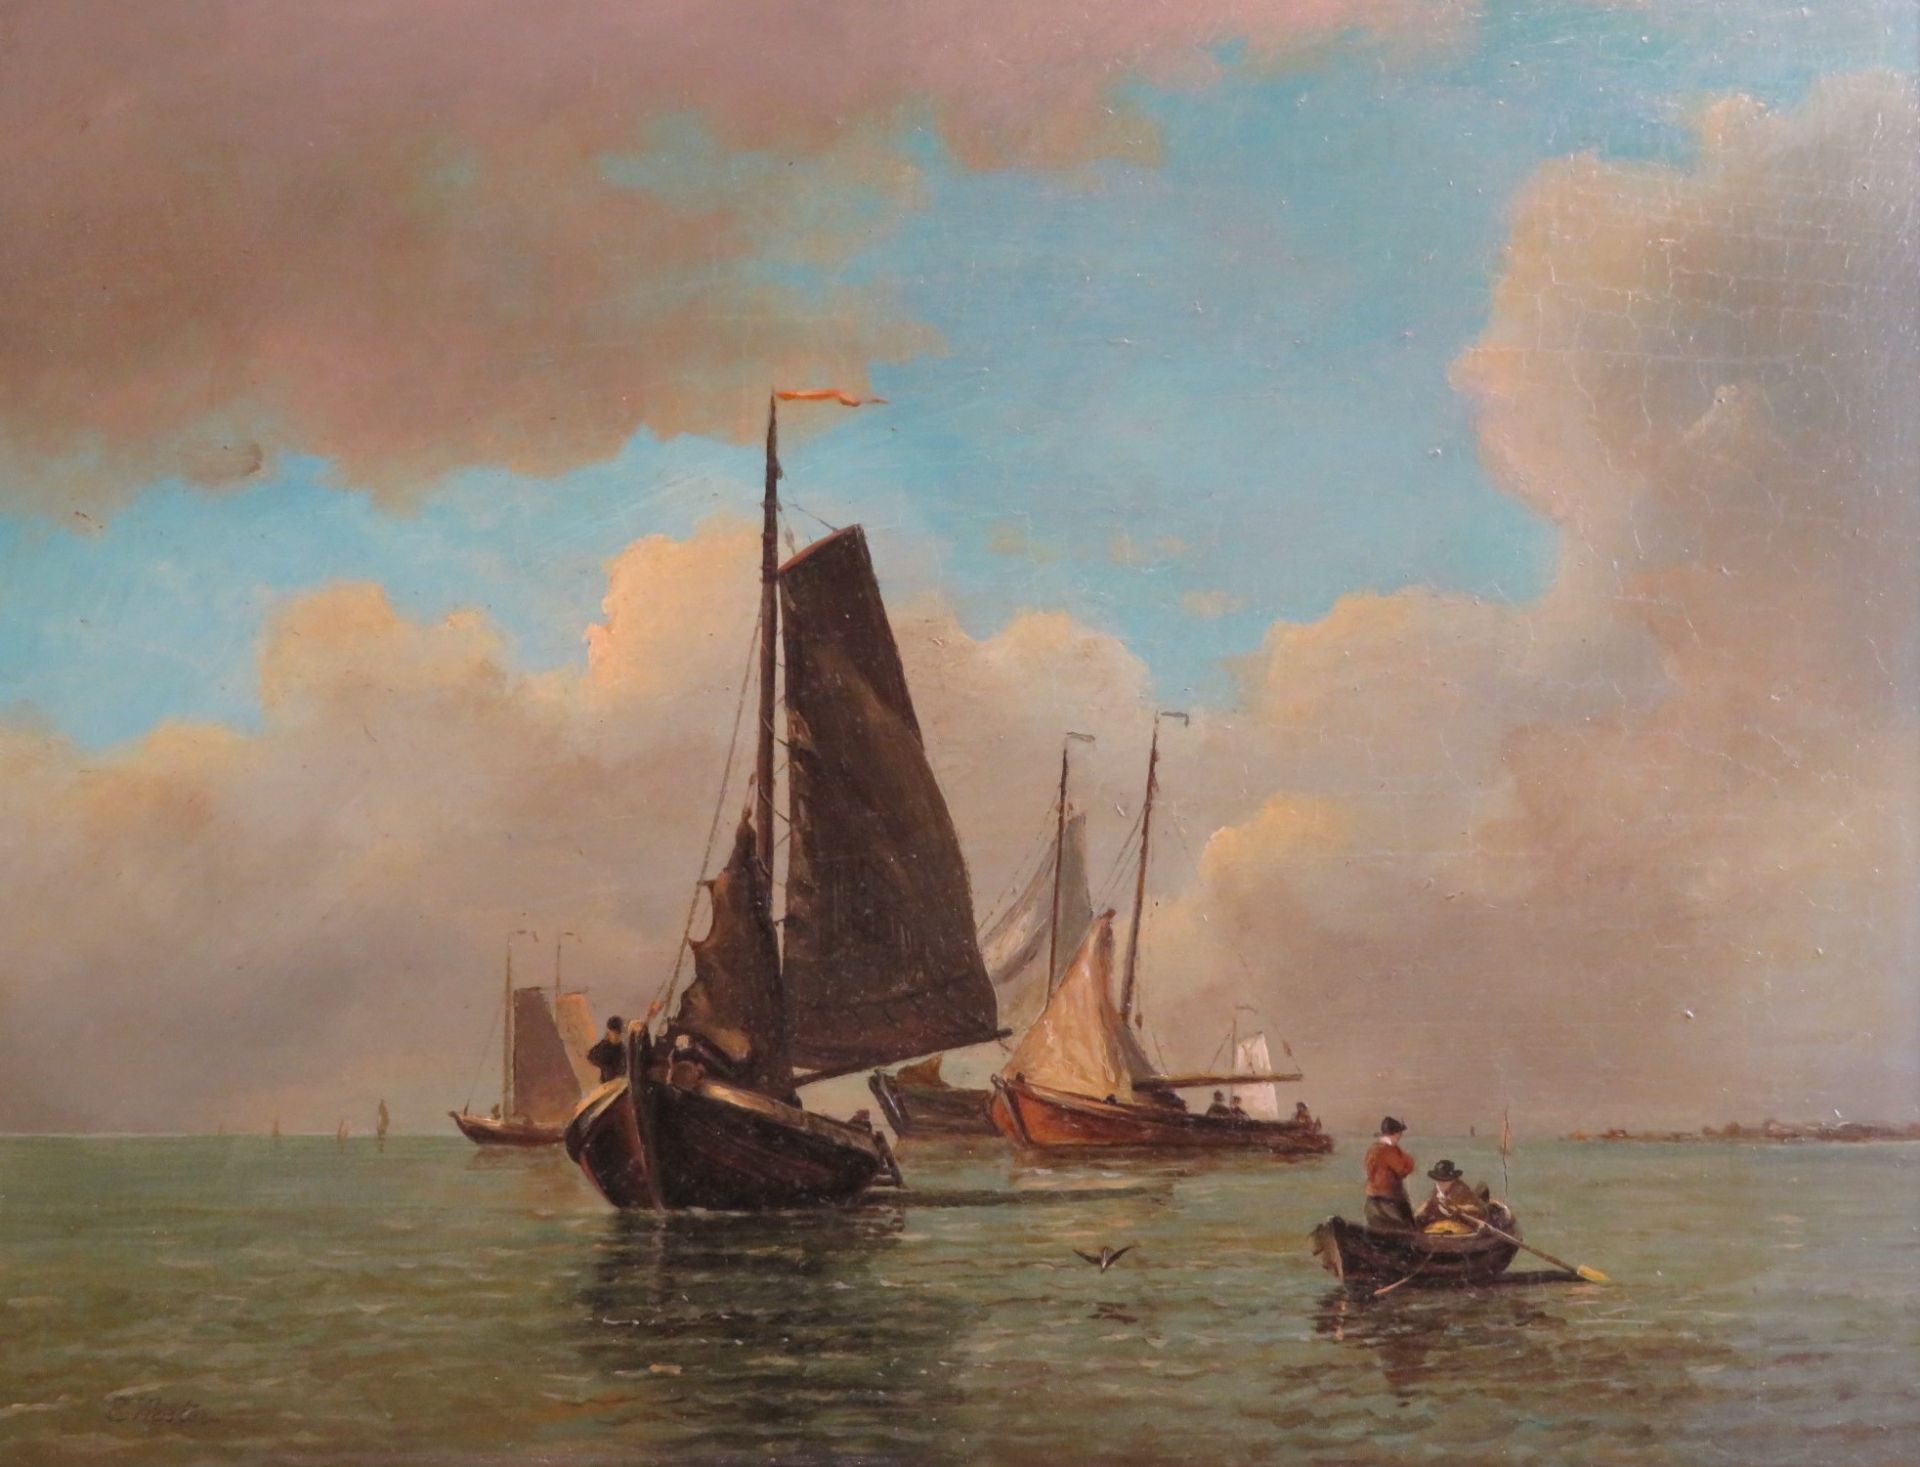 Koster, Everhardus, 1817 - 1892, Den Haag - Dodrecht, niederländischer Marine- und Landschaftsmaler